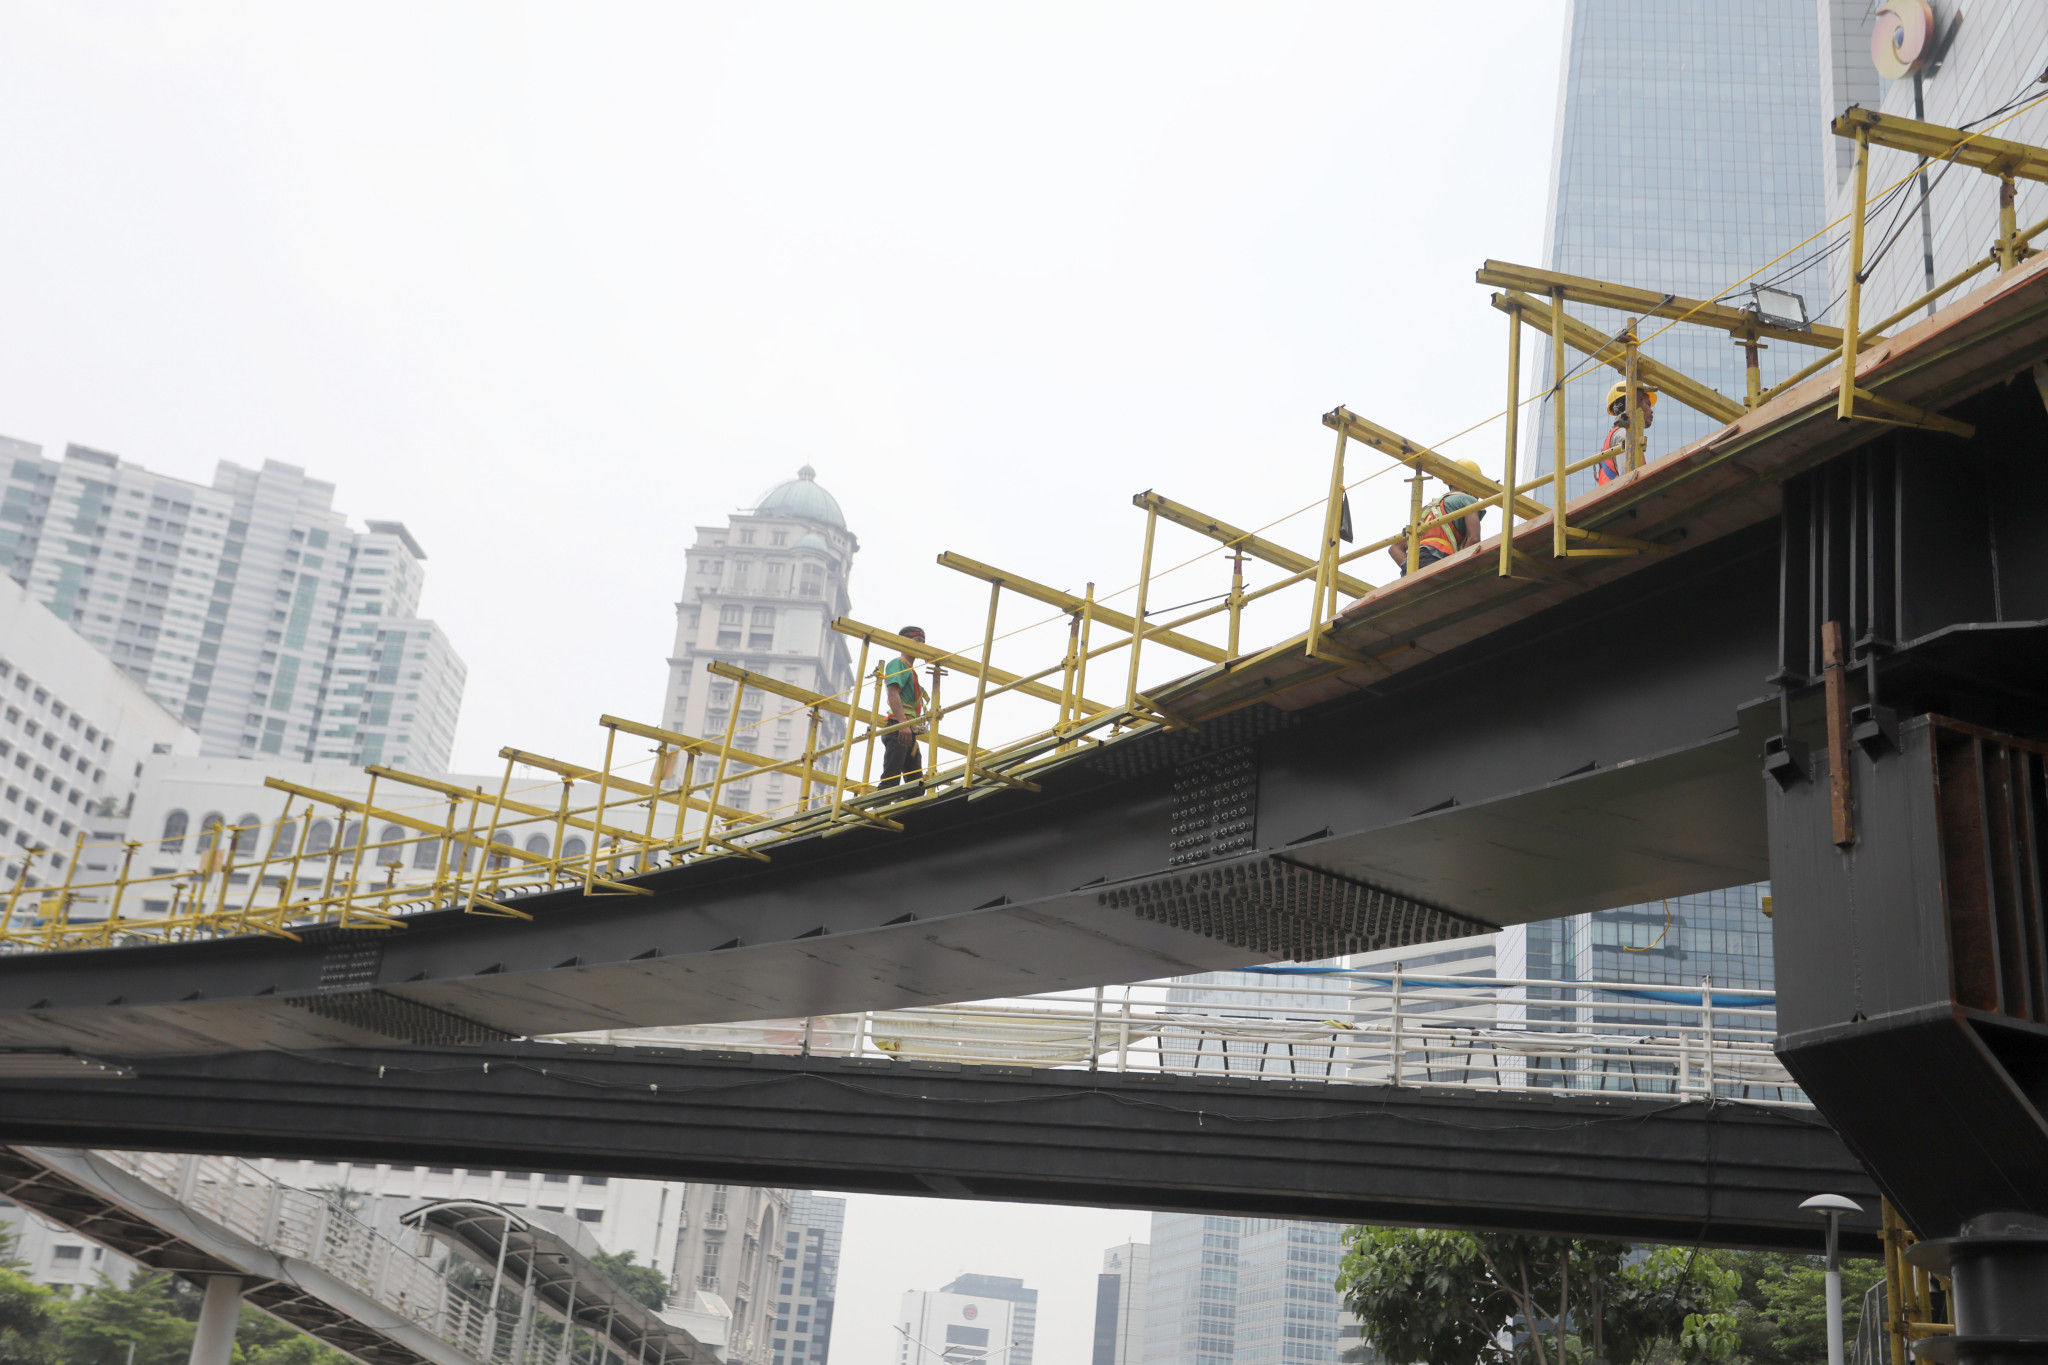 Suasana pengerjaan pembangunan jembatan penyeberangan multiguna (JPM) Dukuh Atas, di kawasan Sudirman, Jakarta, Kamis, 14 Oktober 2021. Foto: Ismail Pohan/TrenAsia